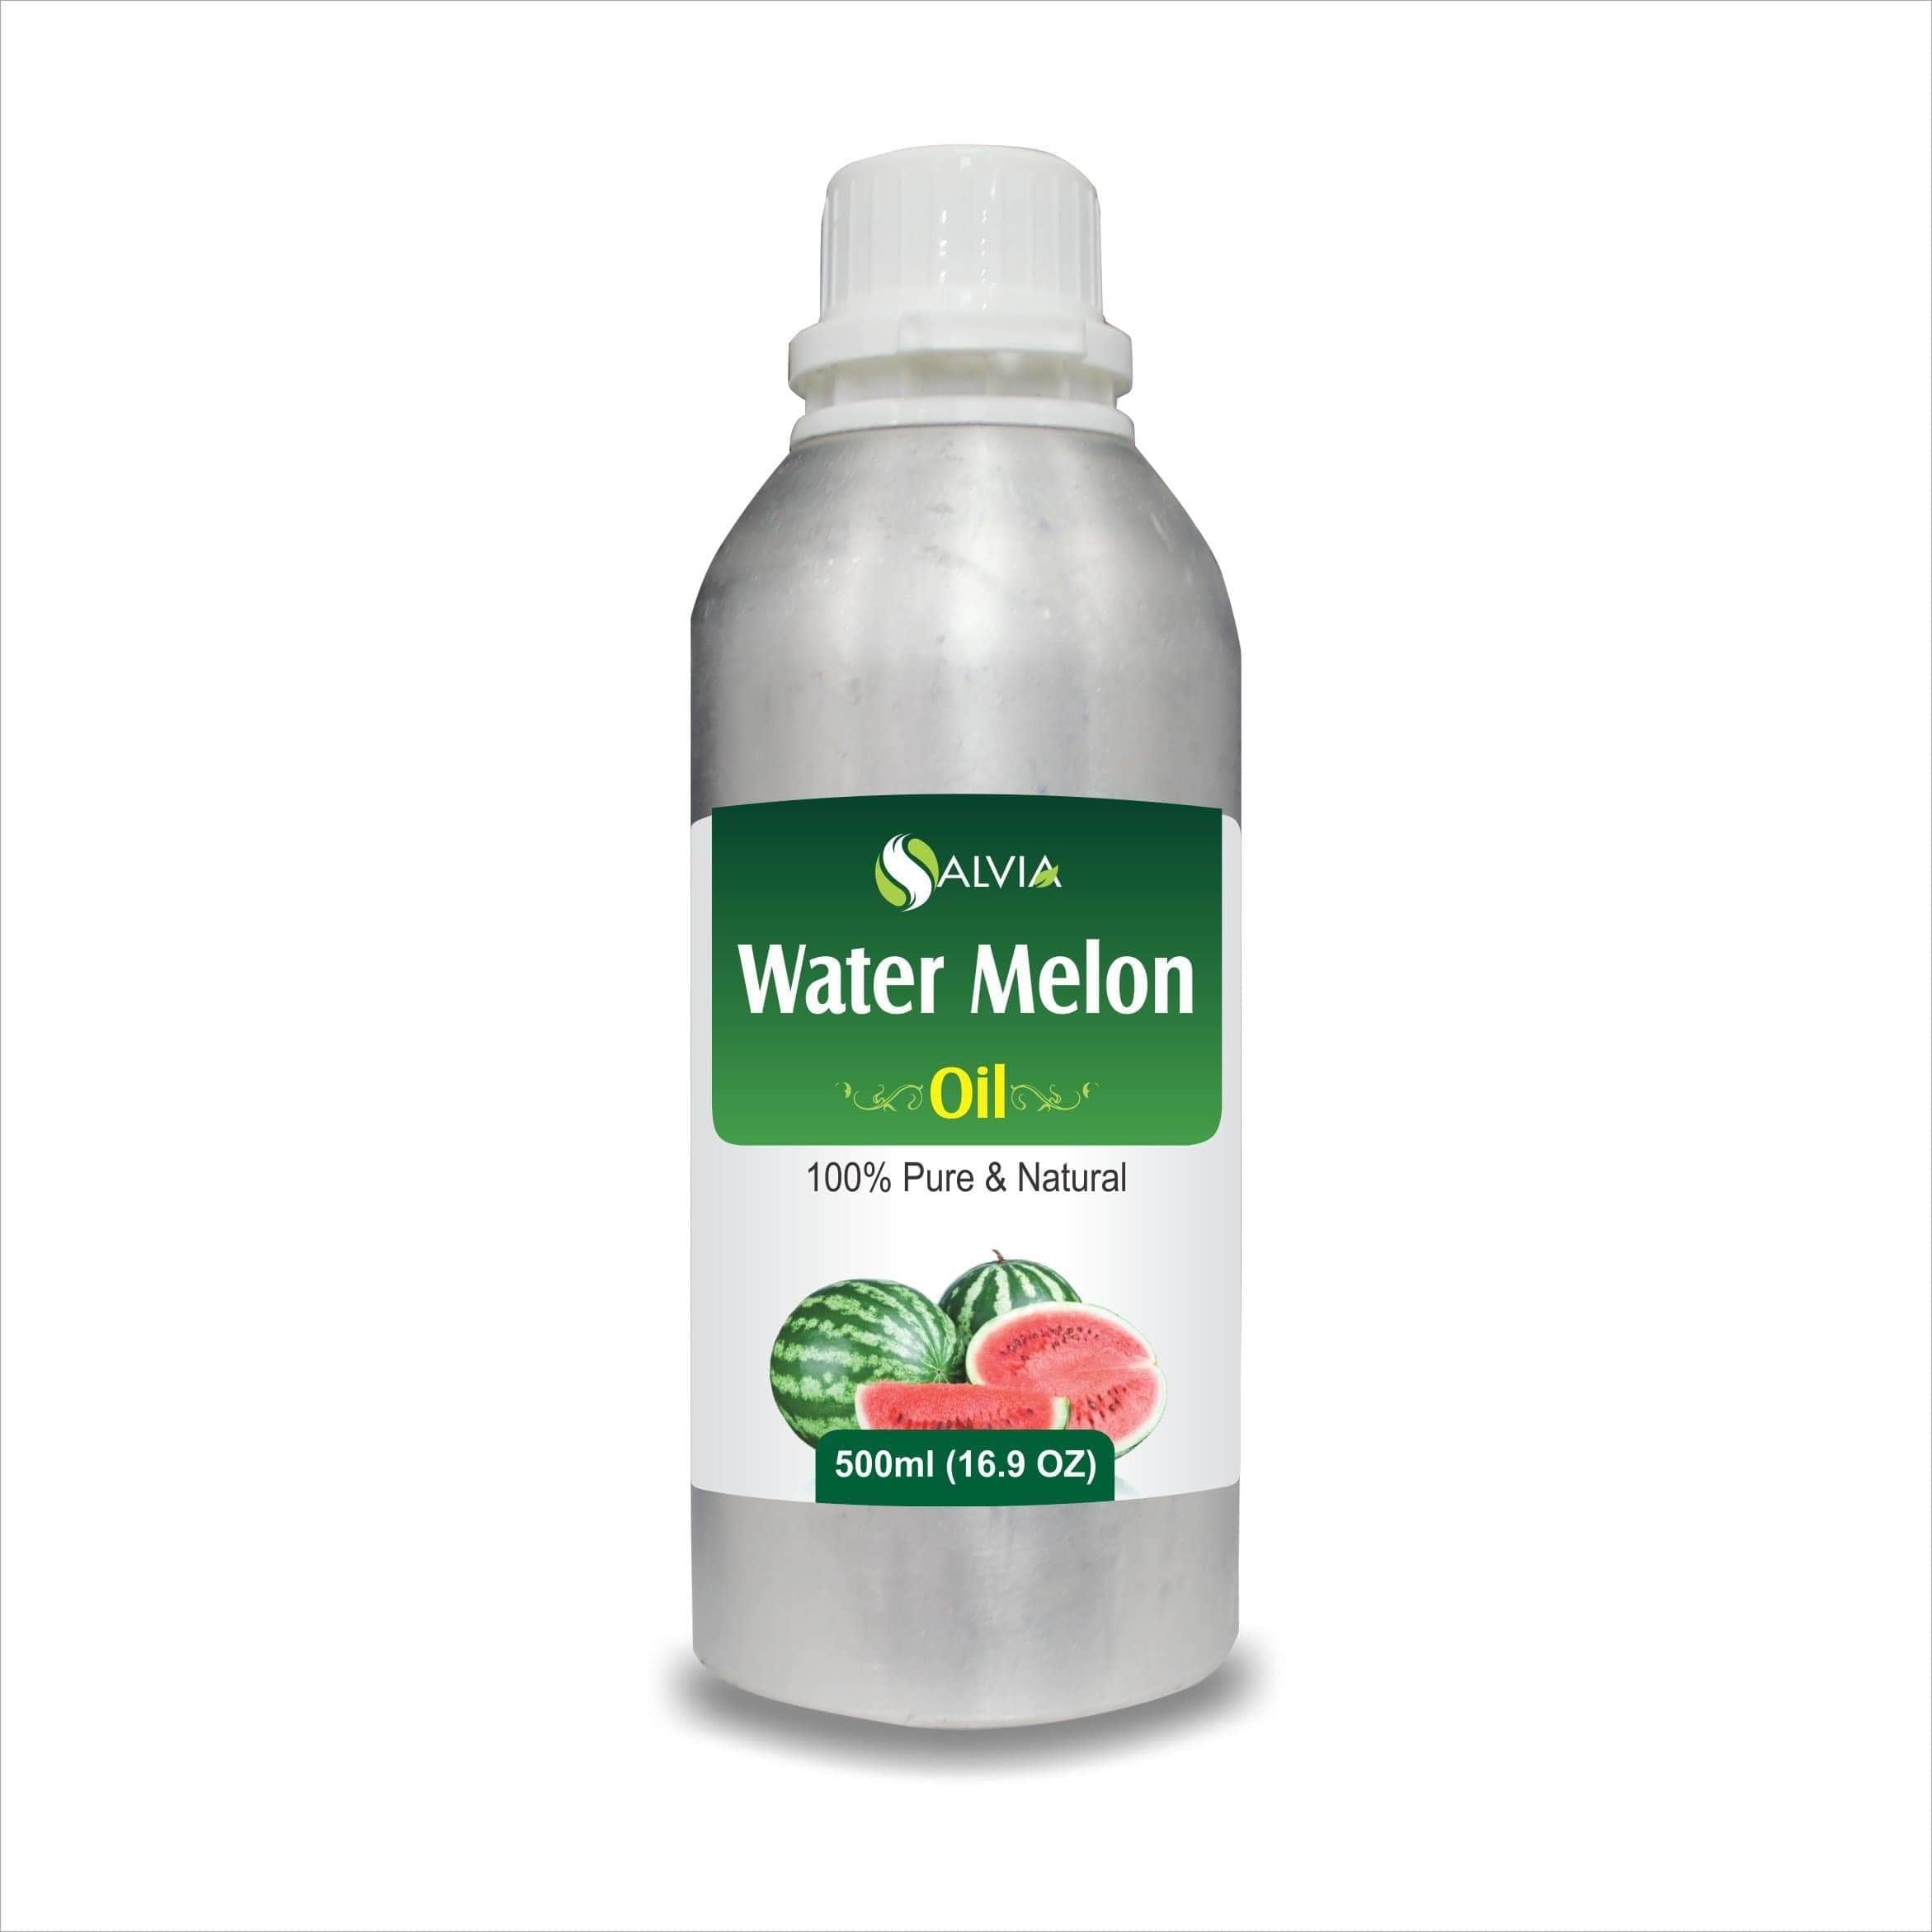 PURE WATER MELON ESSENTIAL OIL Citrullus vulgaris NATURAL HERBAL AYURVEDA